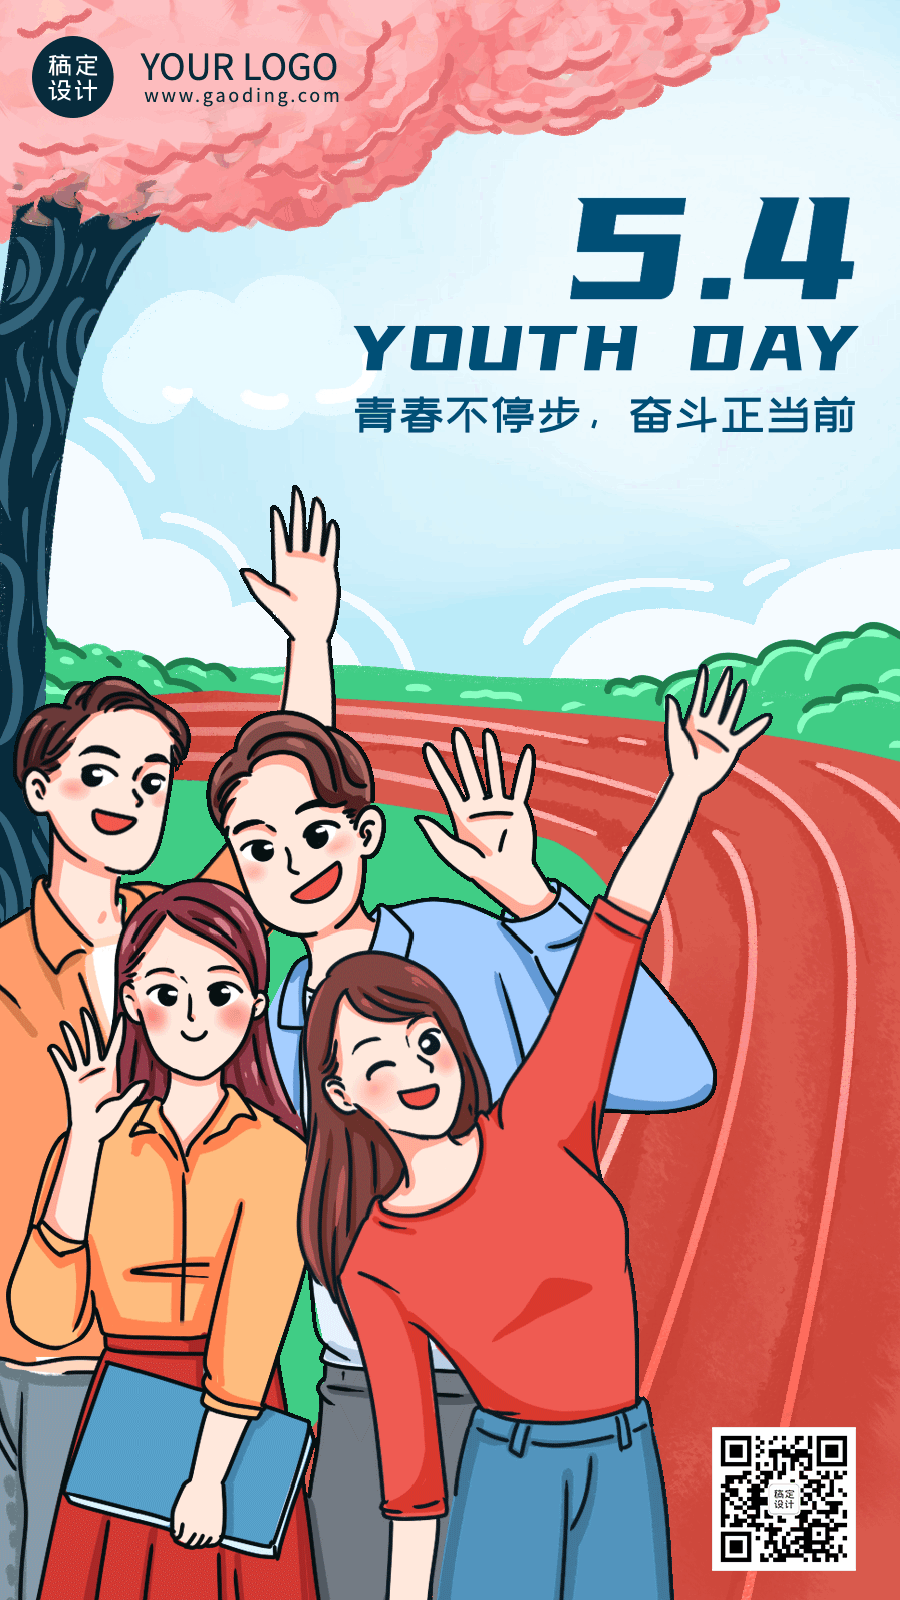 五四青年节青春祝福动态手机海报